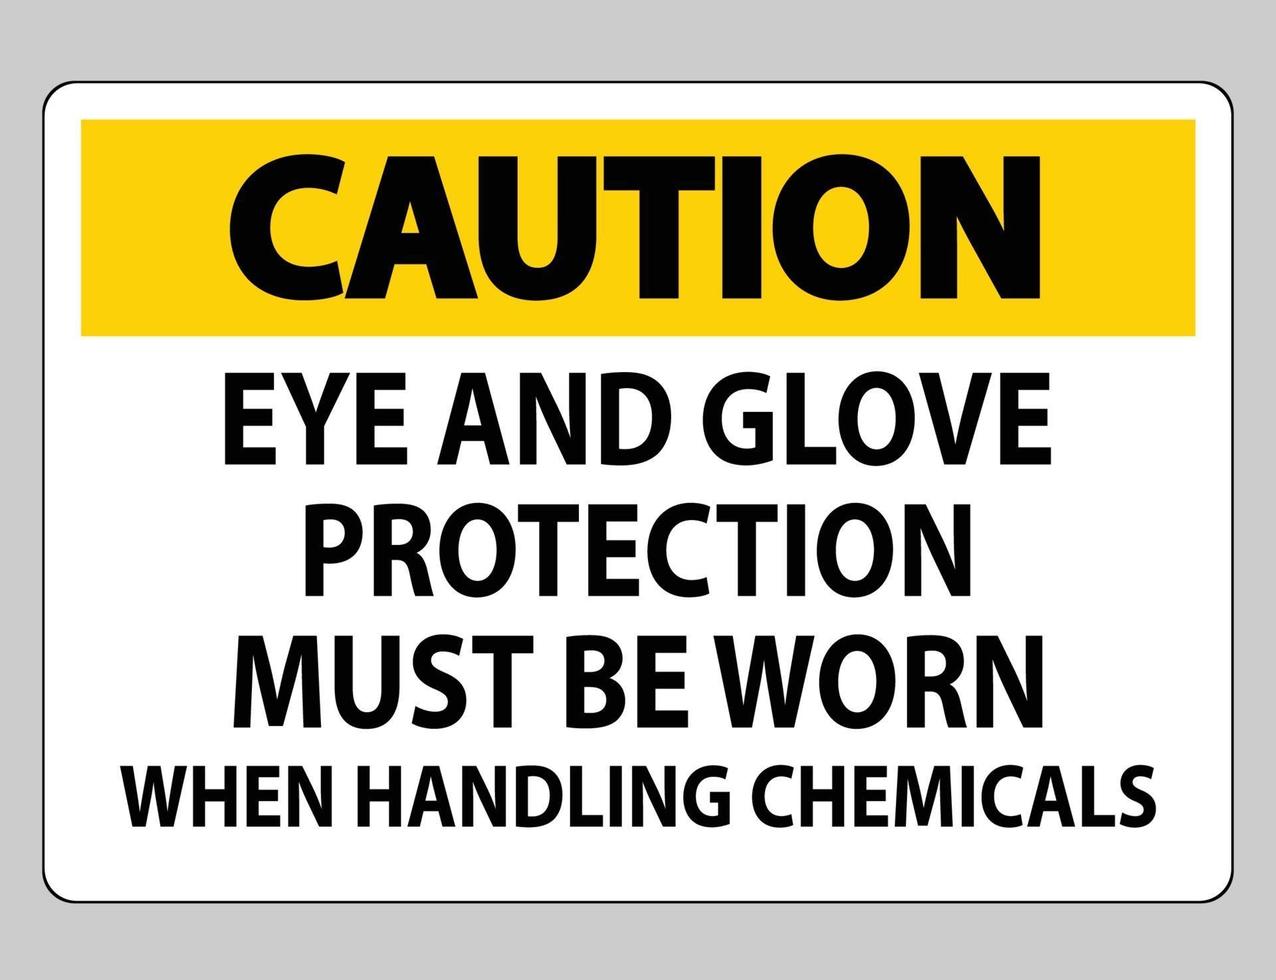 sinal de cuidado proteção para os olhos e luvas deve ser usada ao manusear produtos químicos vetor